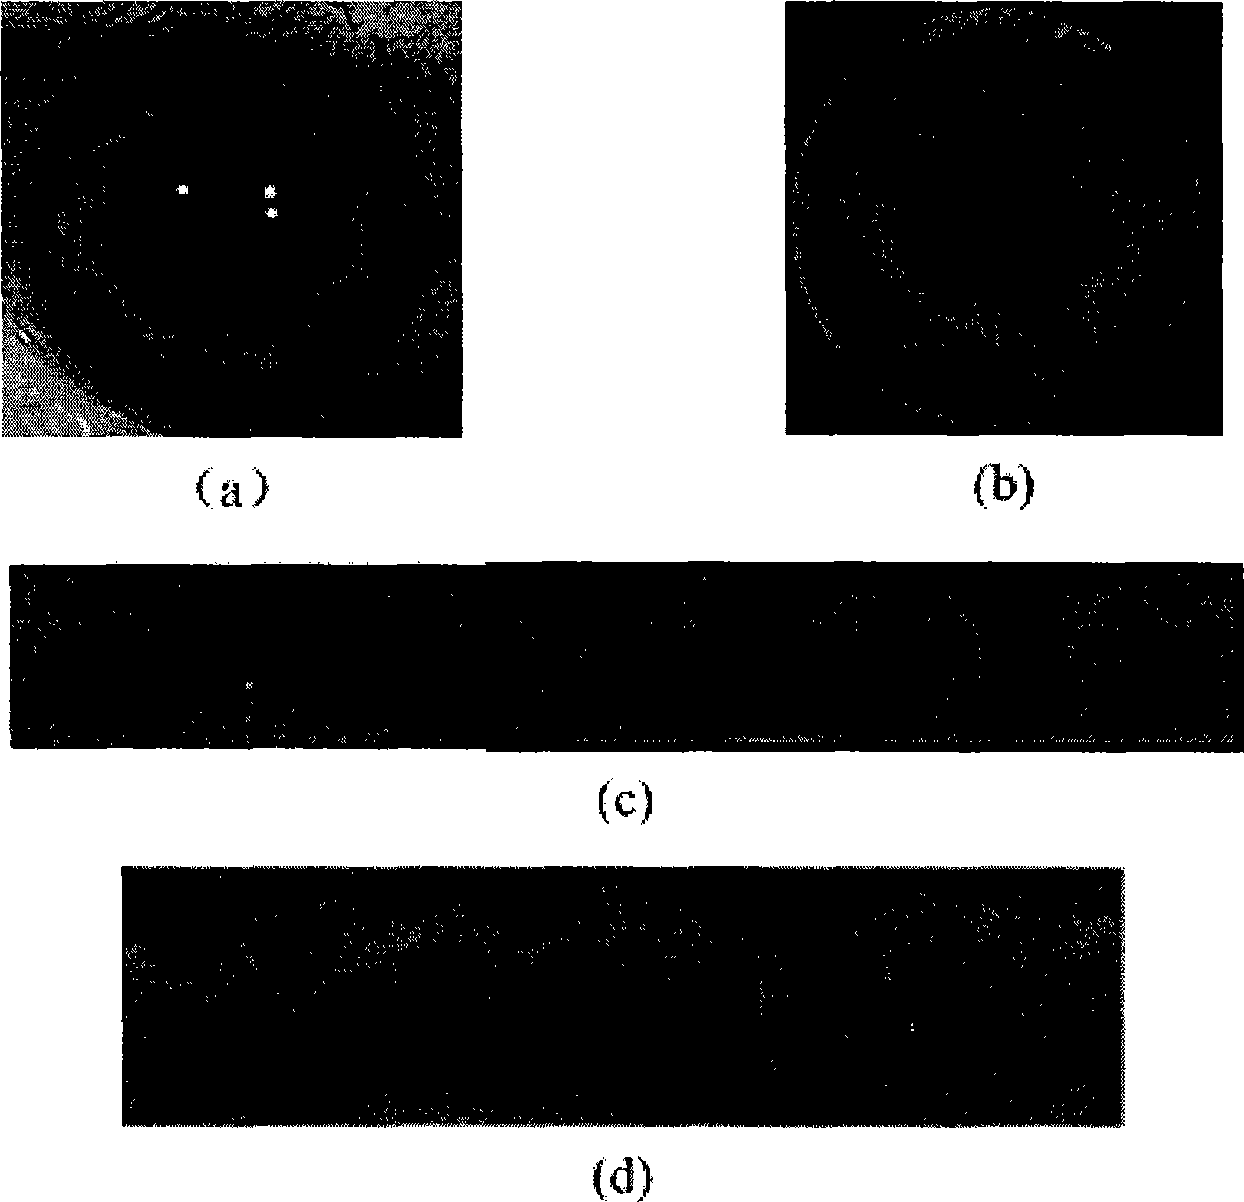 Iris image database synthesis method based on block texture sampling